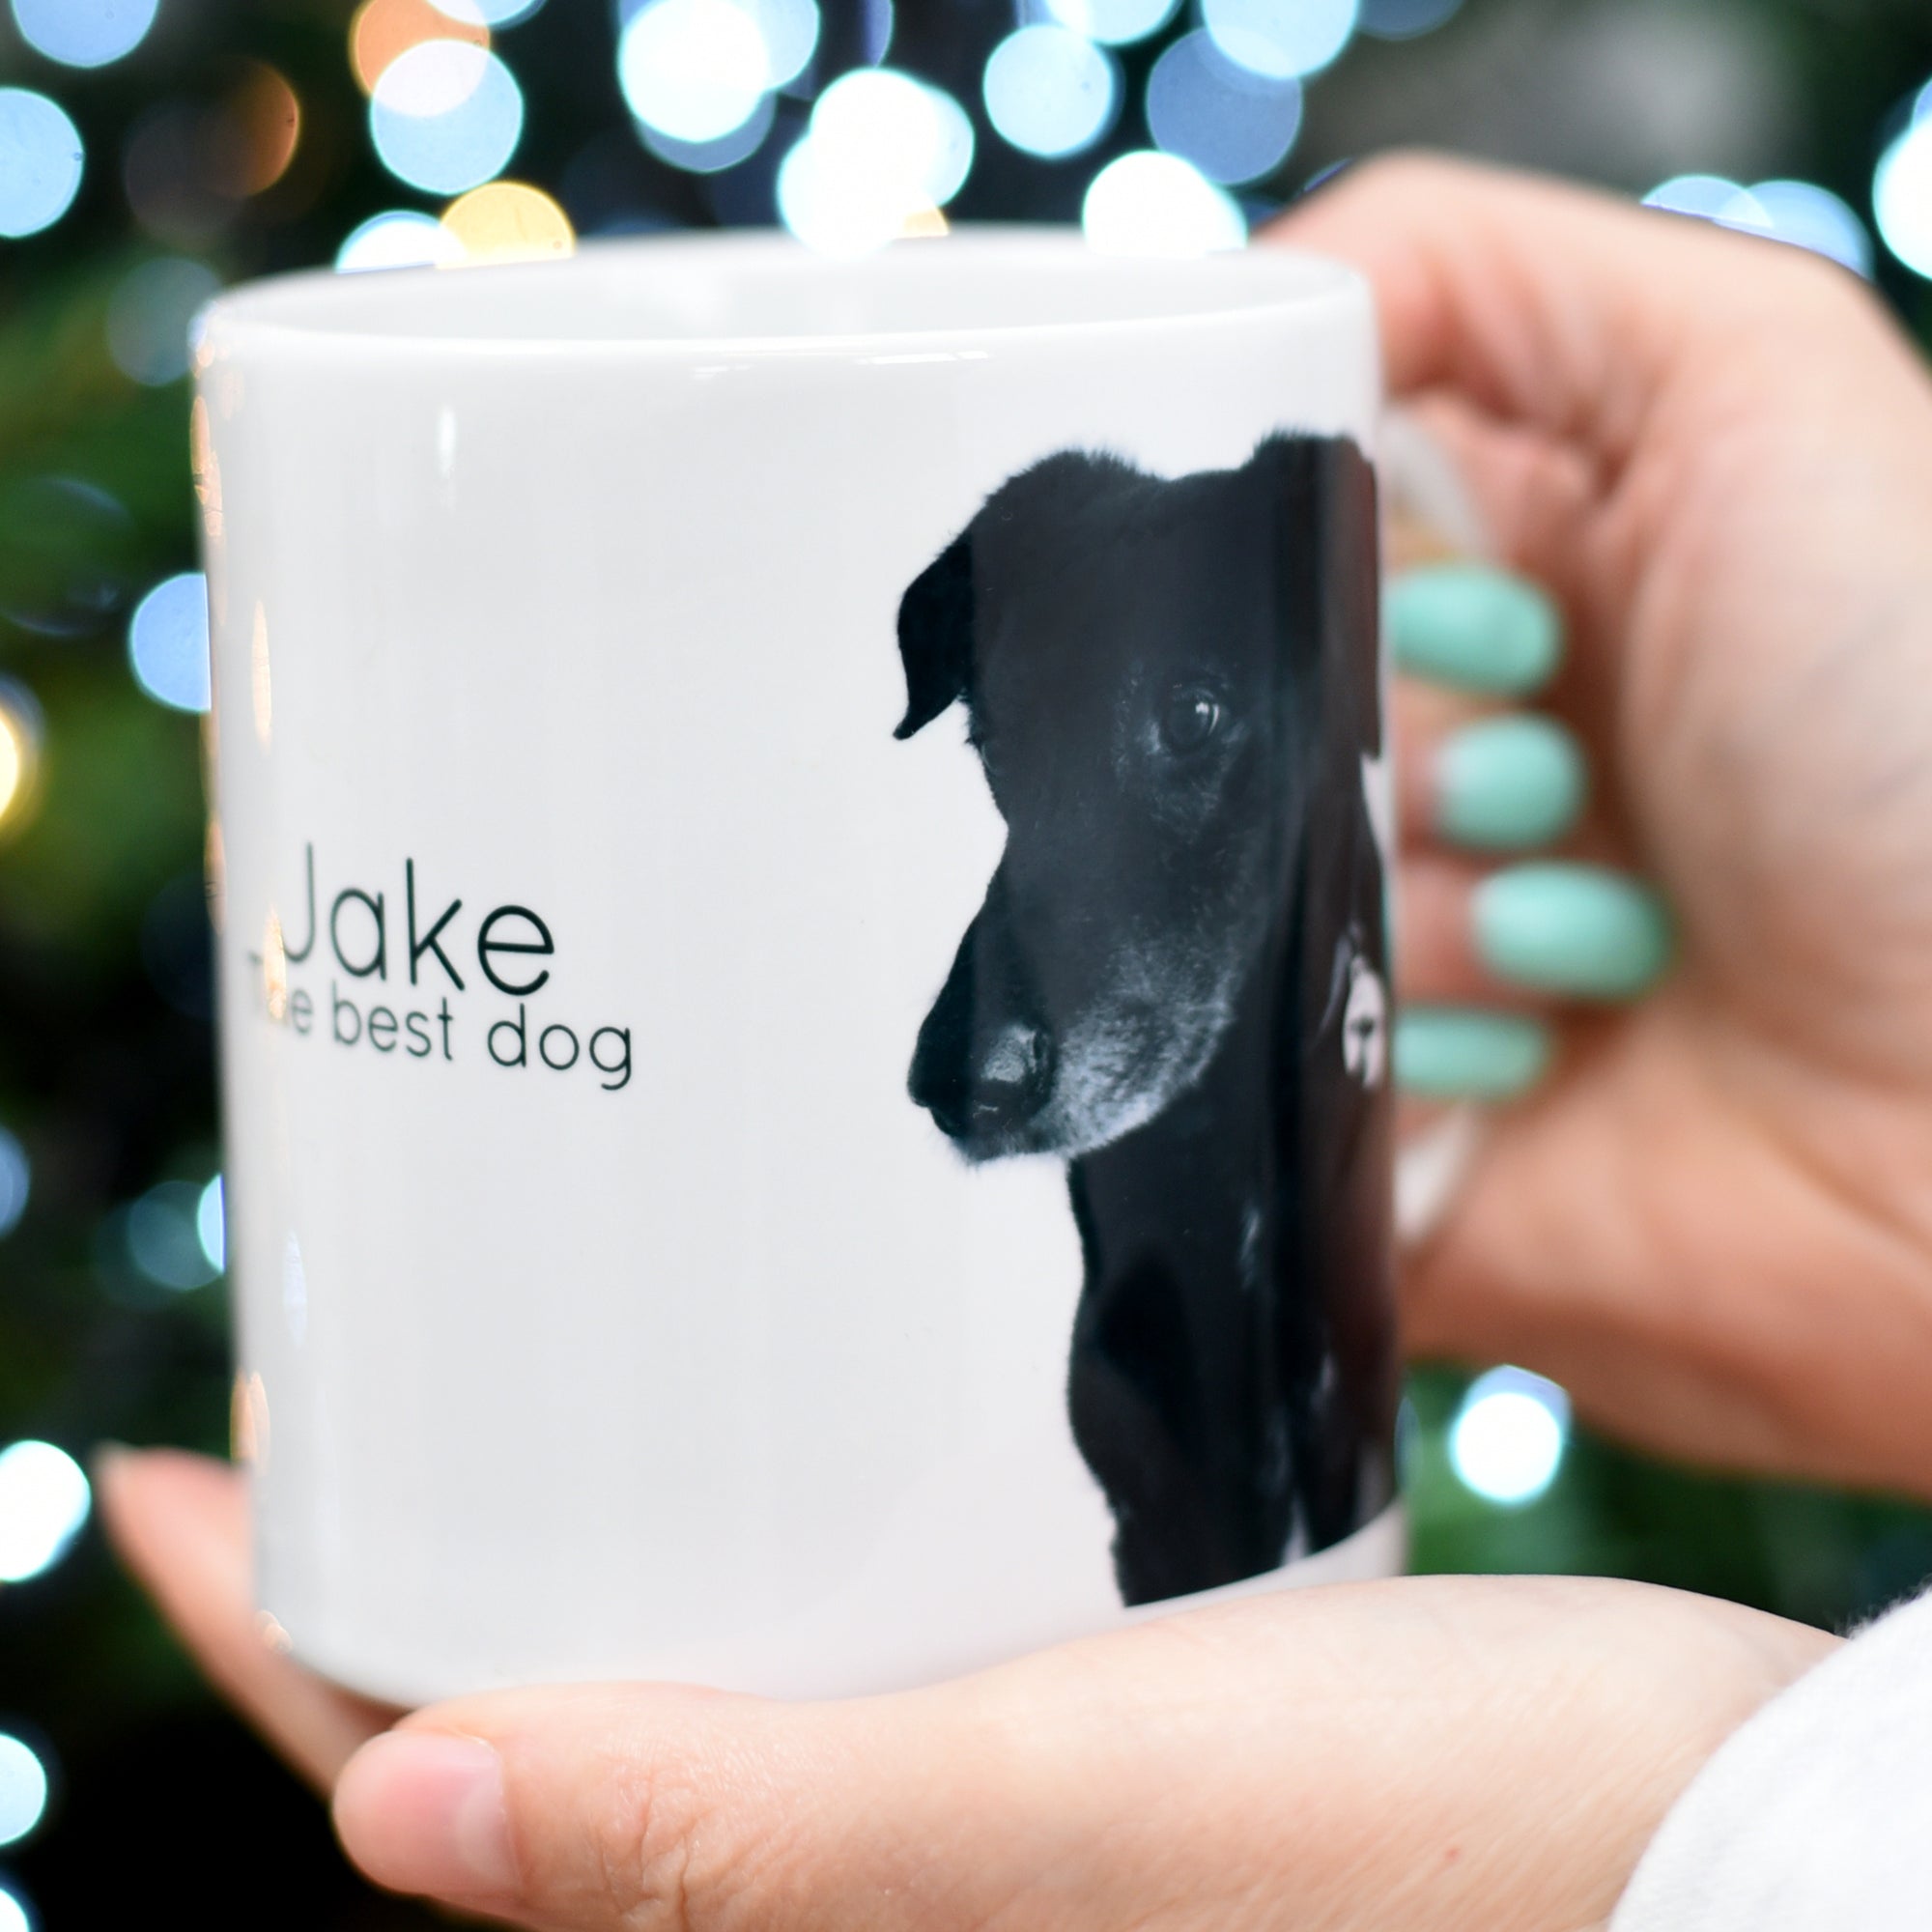 Personalised Dog and Pet Photo Mug